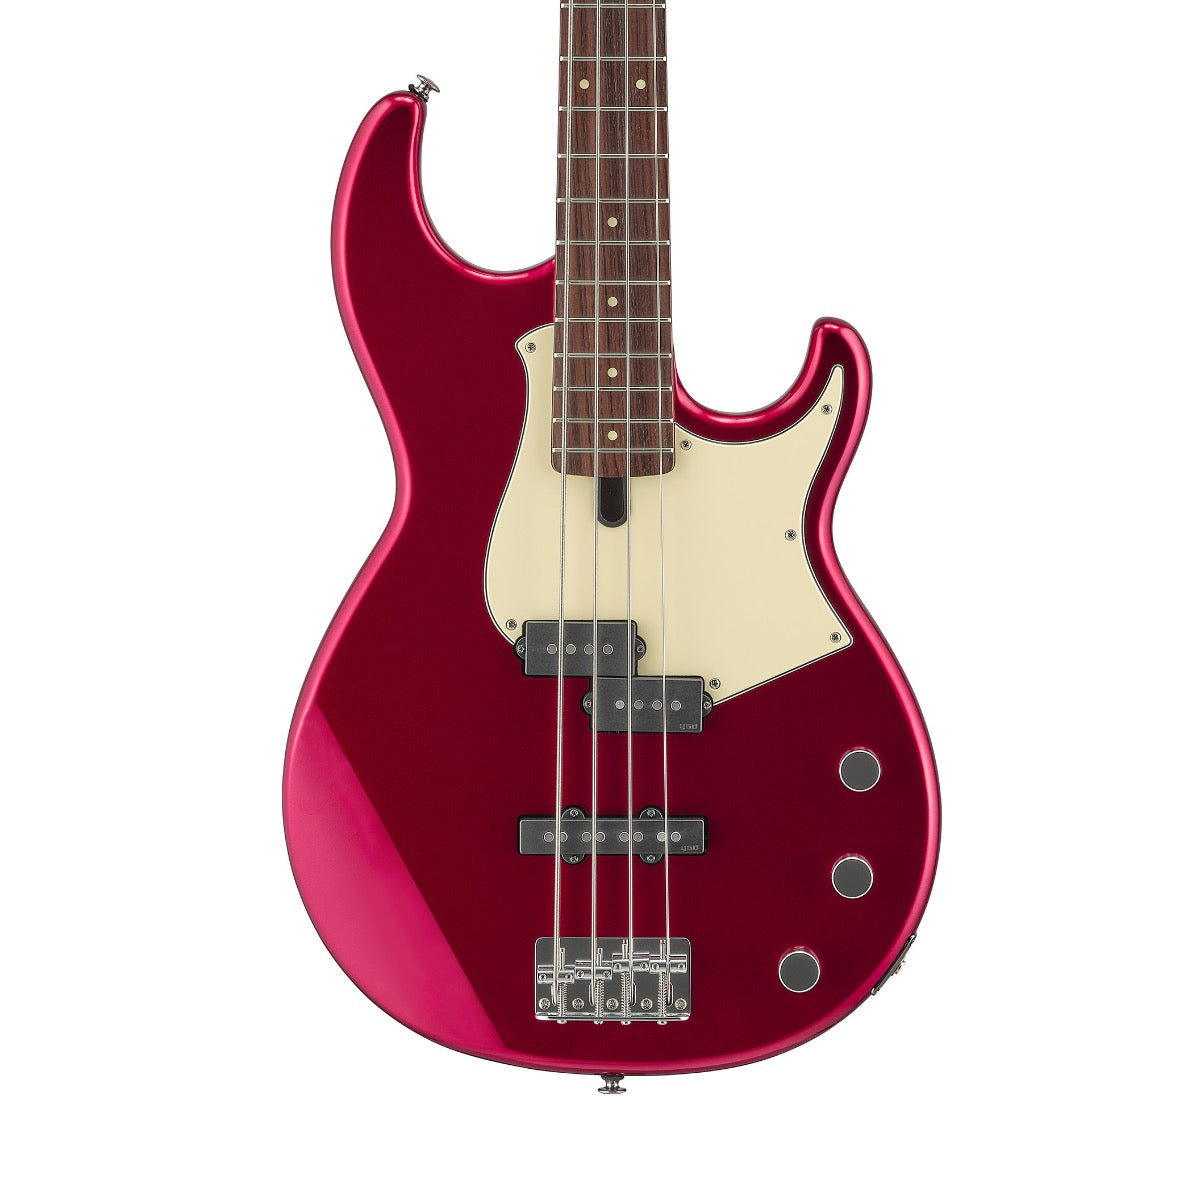 Yamaha BB434 Electric Bass Guitar - Red Metallic, View 1